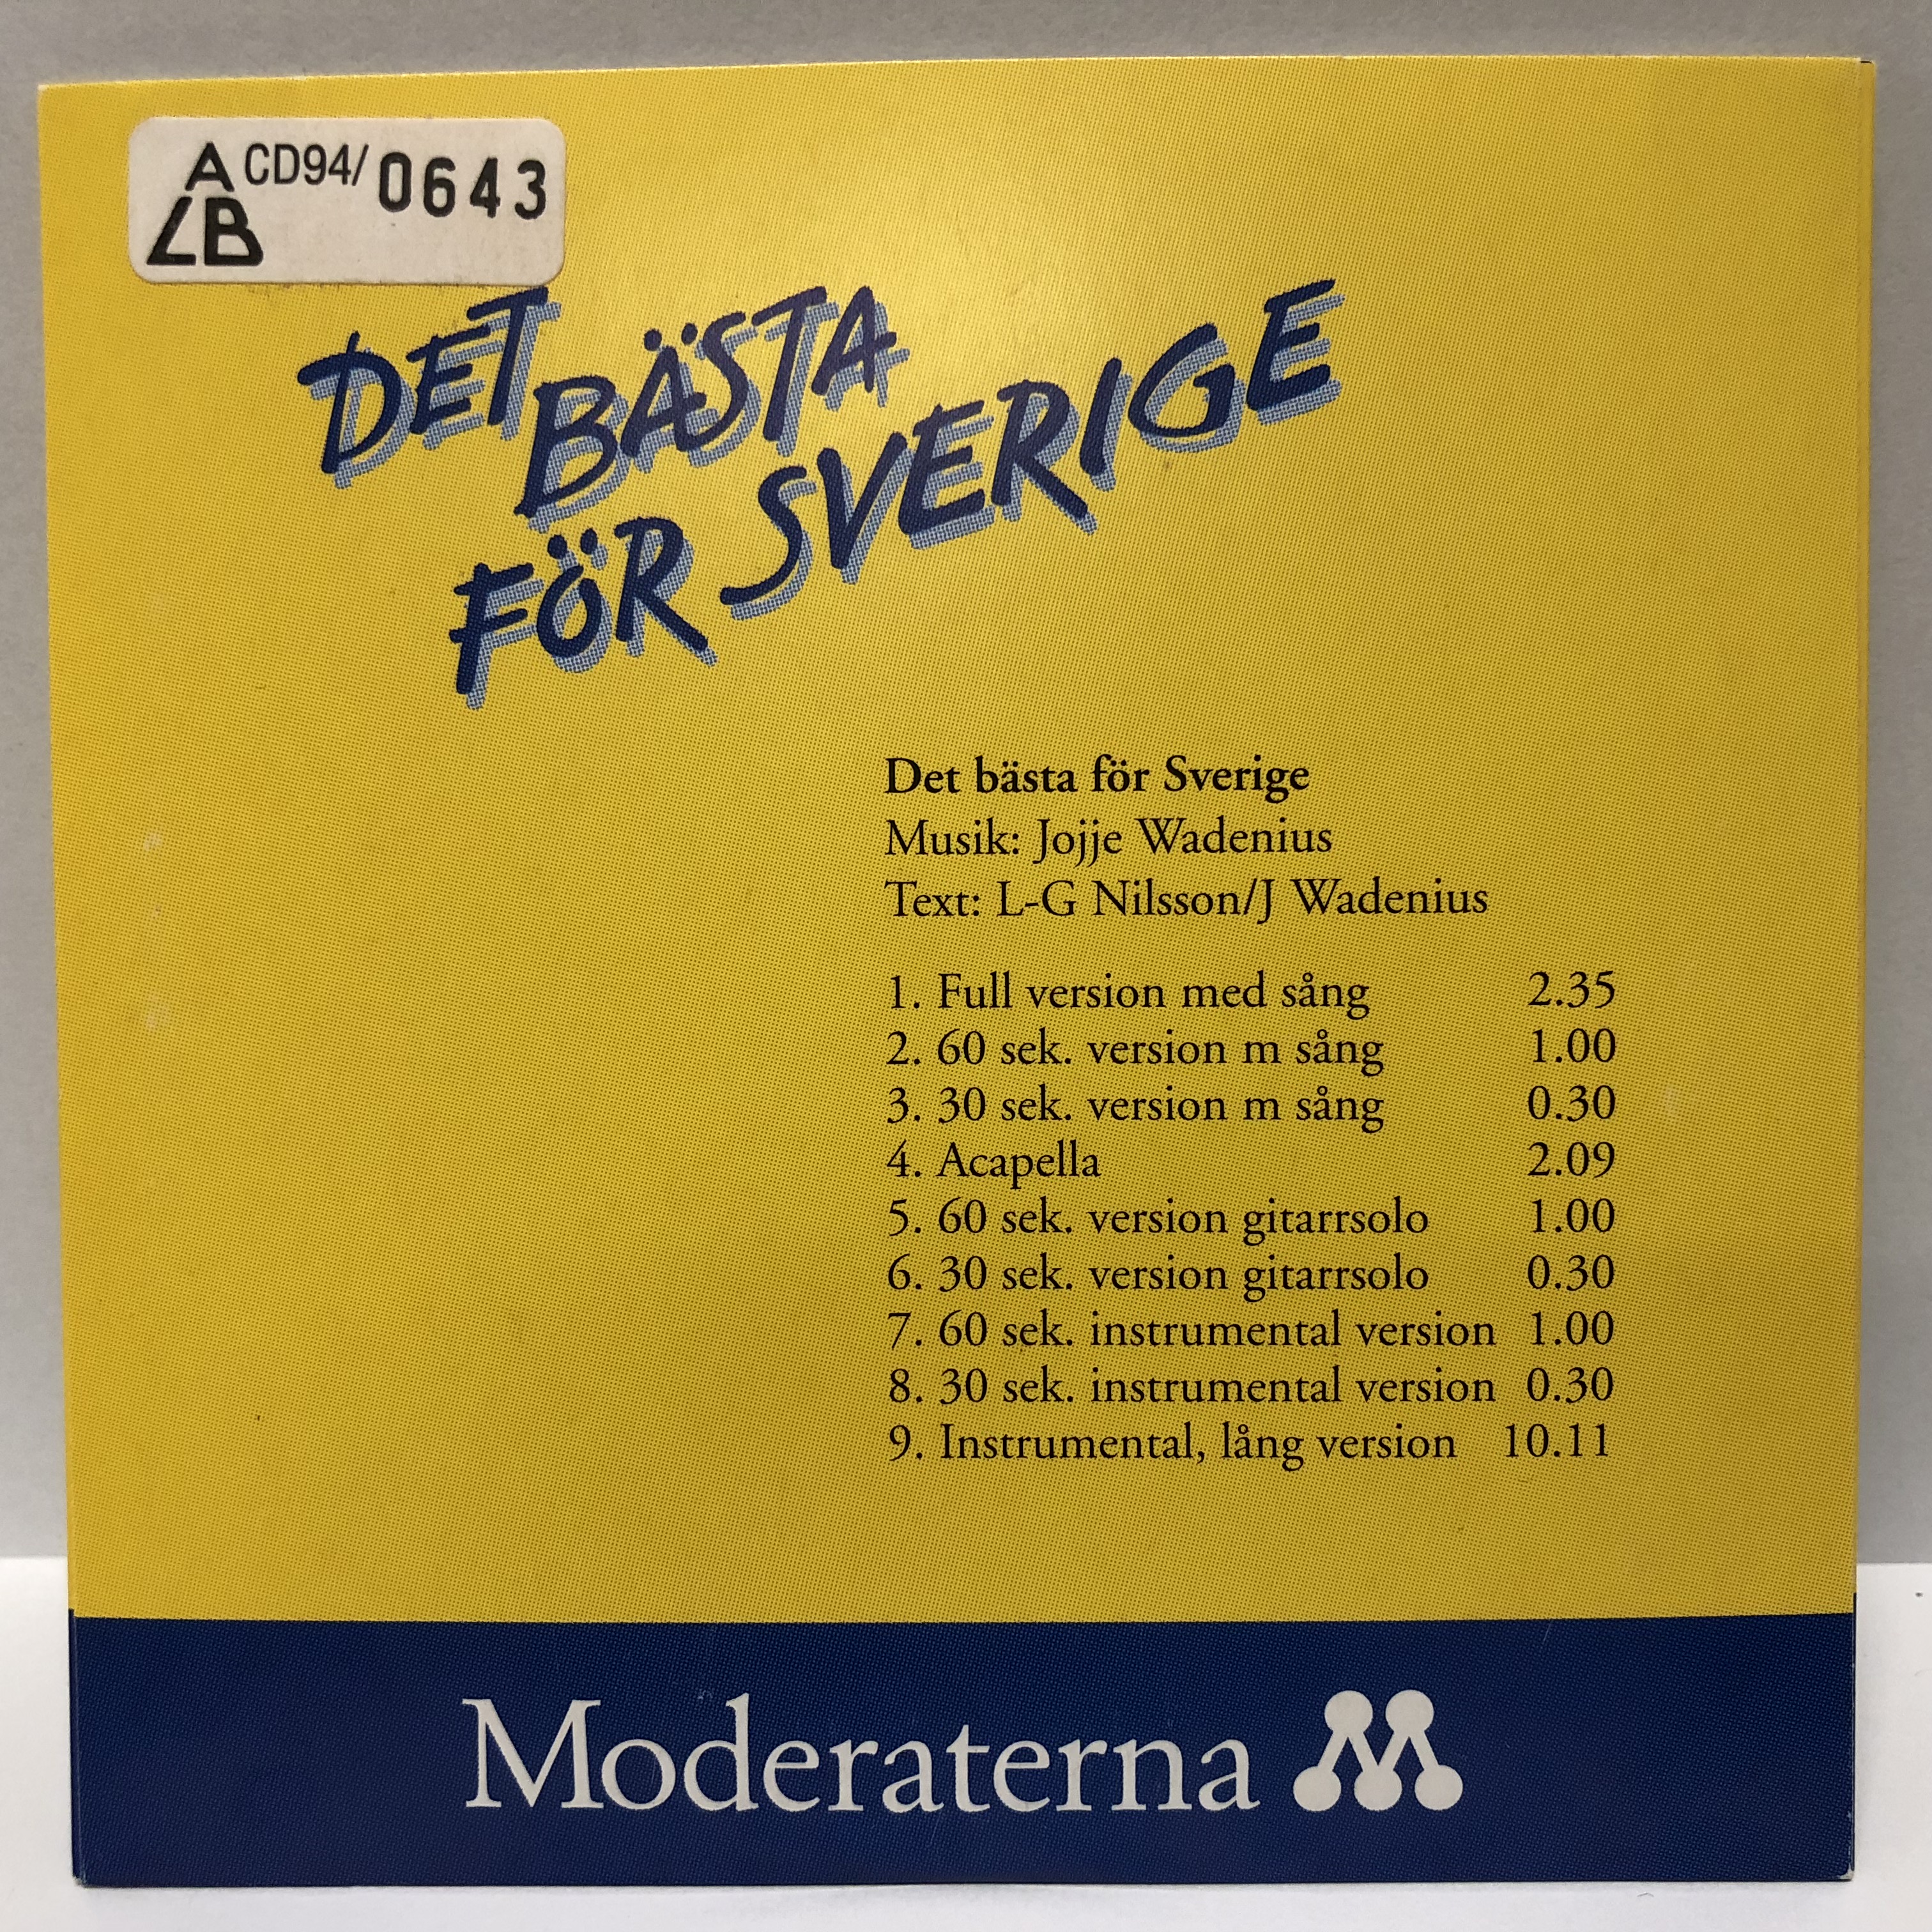 "Det bästa för Sverige", Moderaternas kampanjlåt 1994 - av ingen mindre än Jojje Wadenius